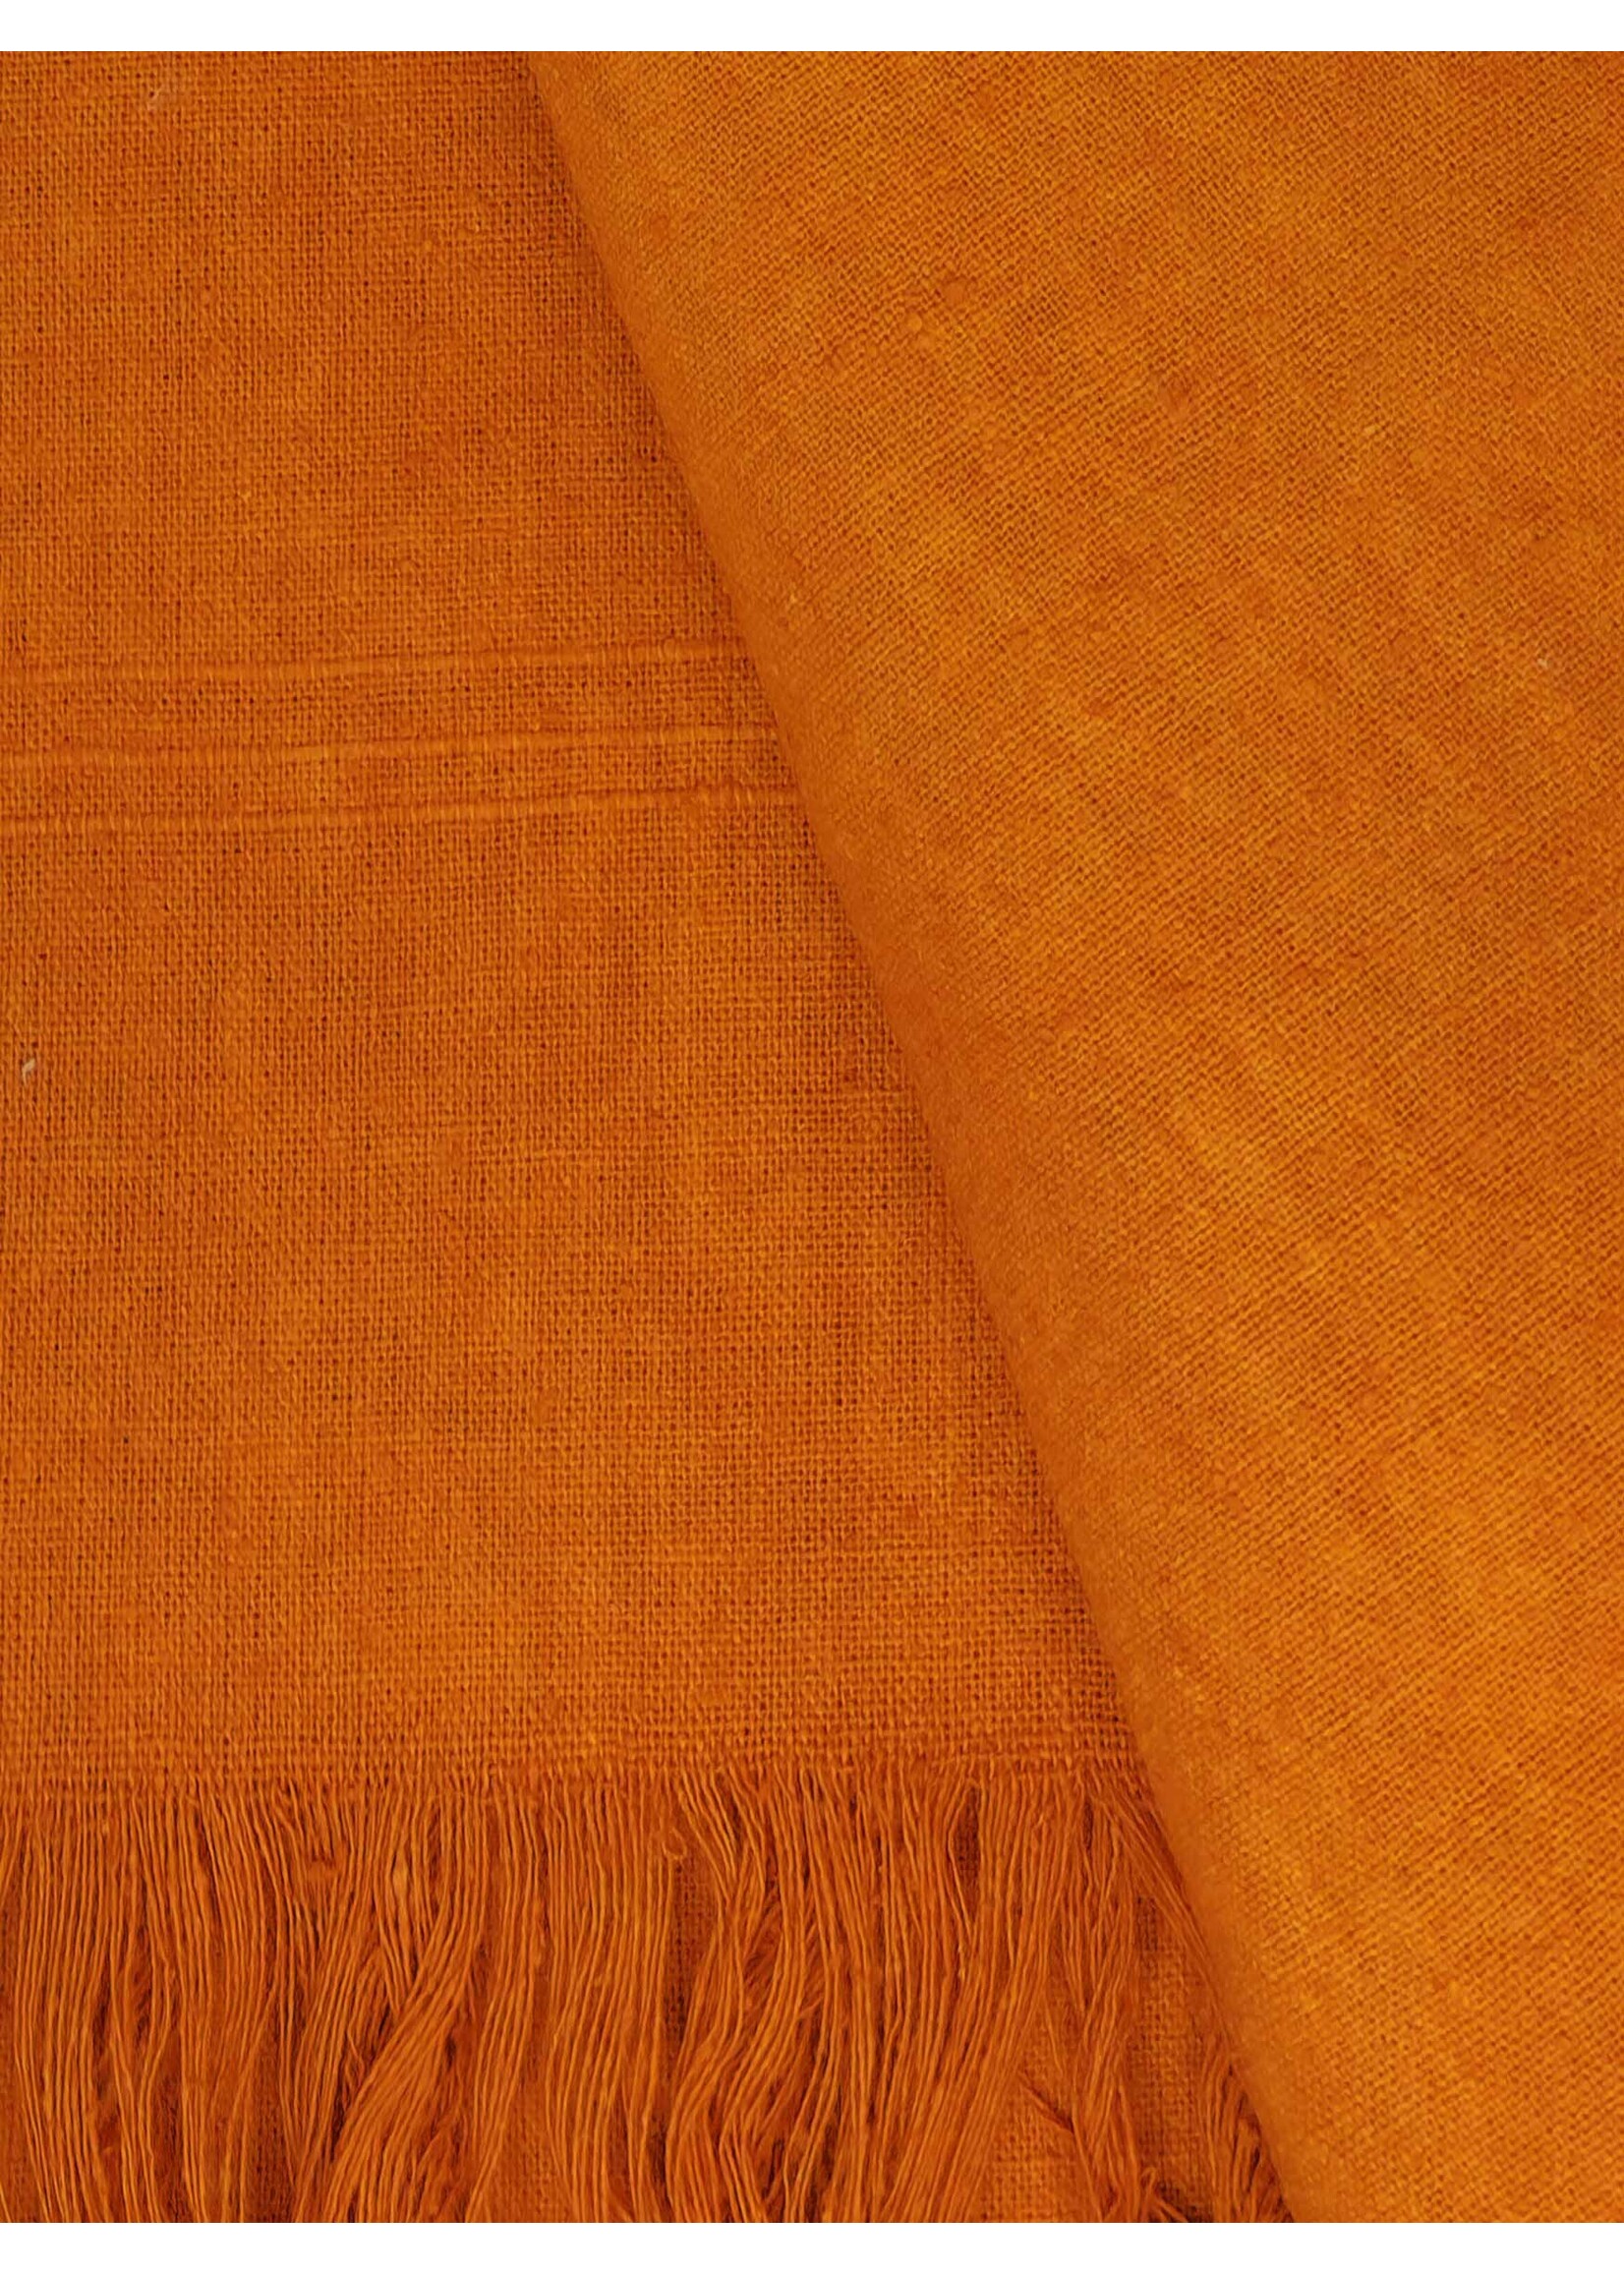 Tibetischer Schal aus Rohseide, 250 x 120 cm